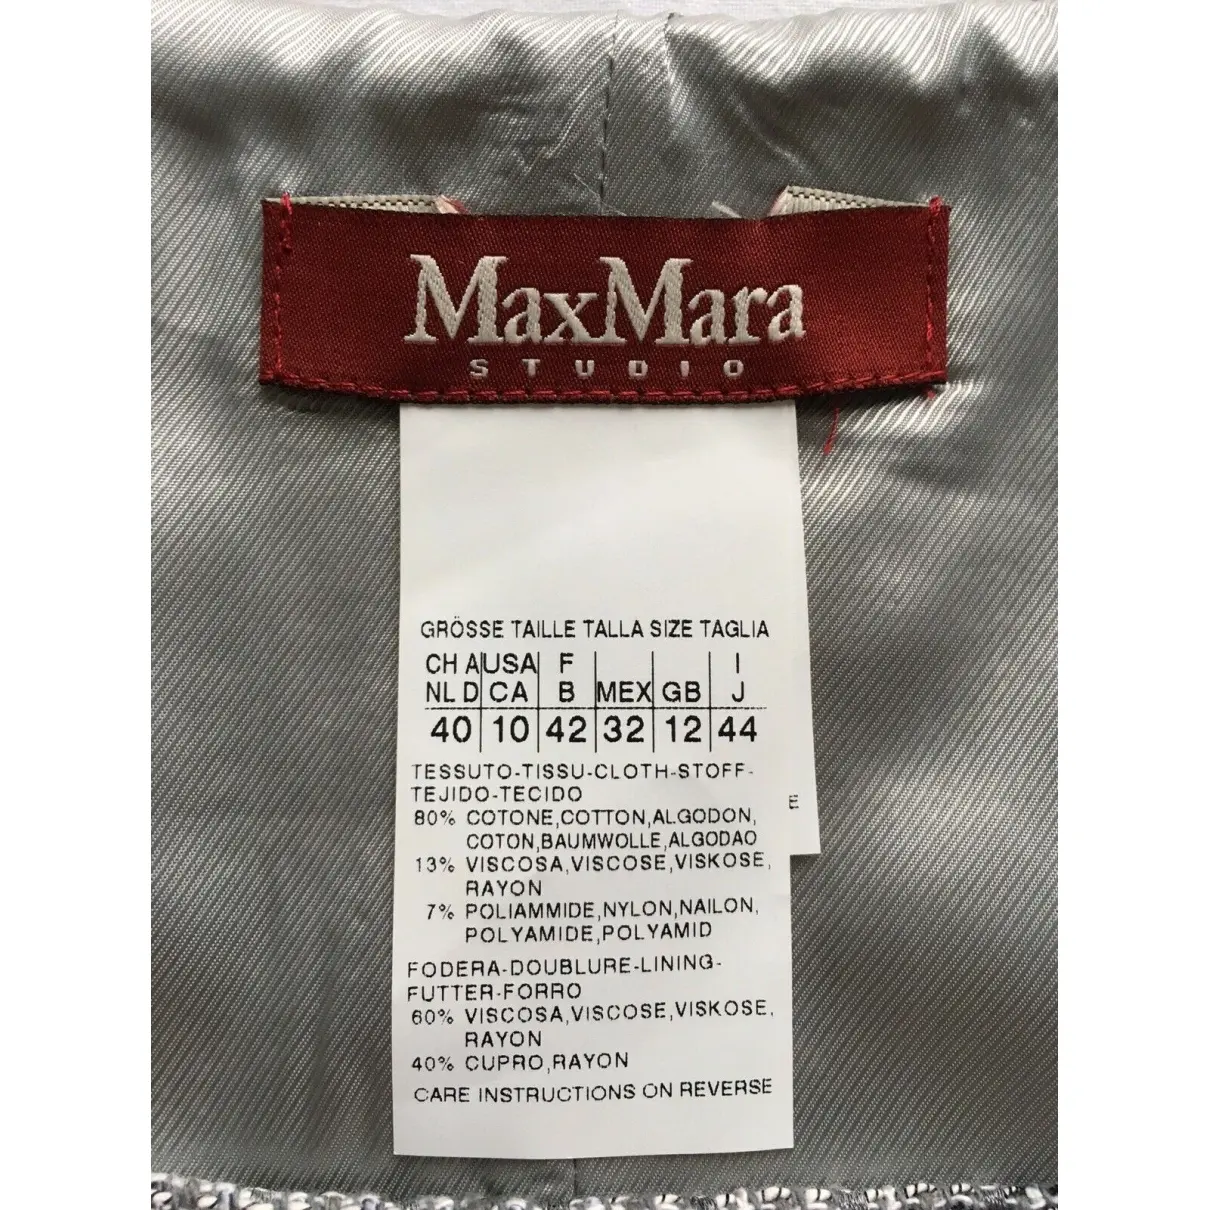 Buy Max Mara Studio Suit jacket online